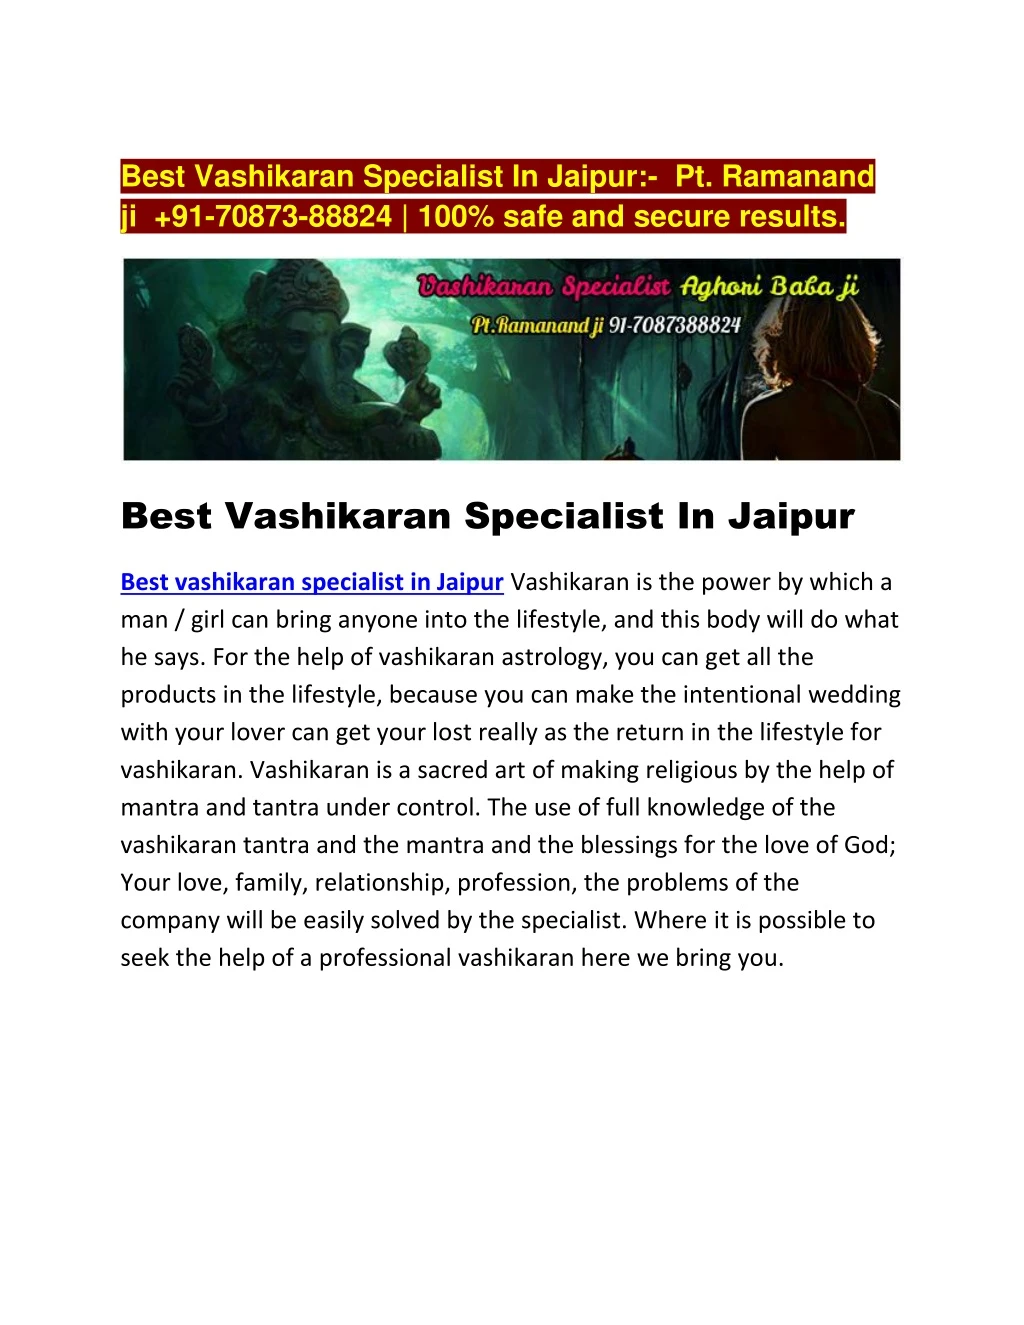 best vashikaran specialist in jaipur pt ramanand